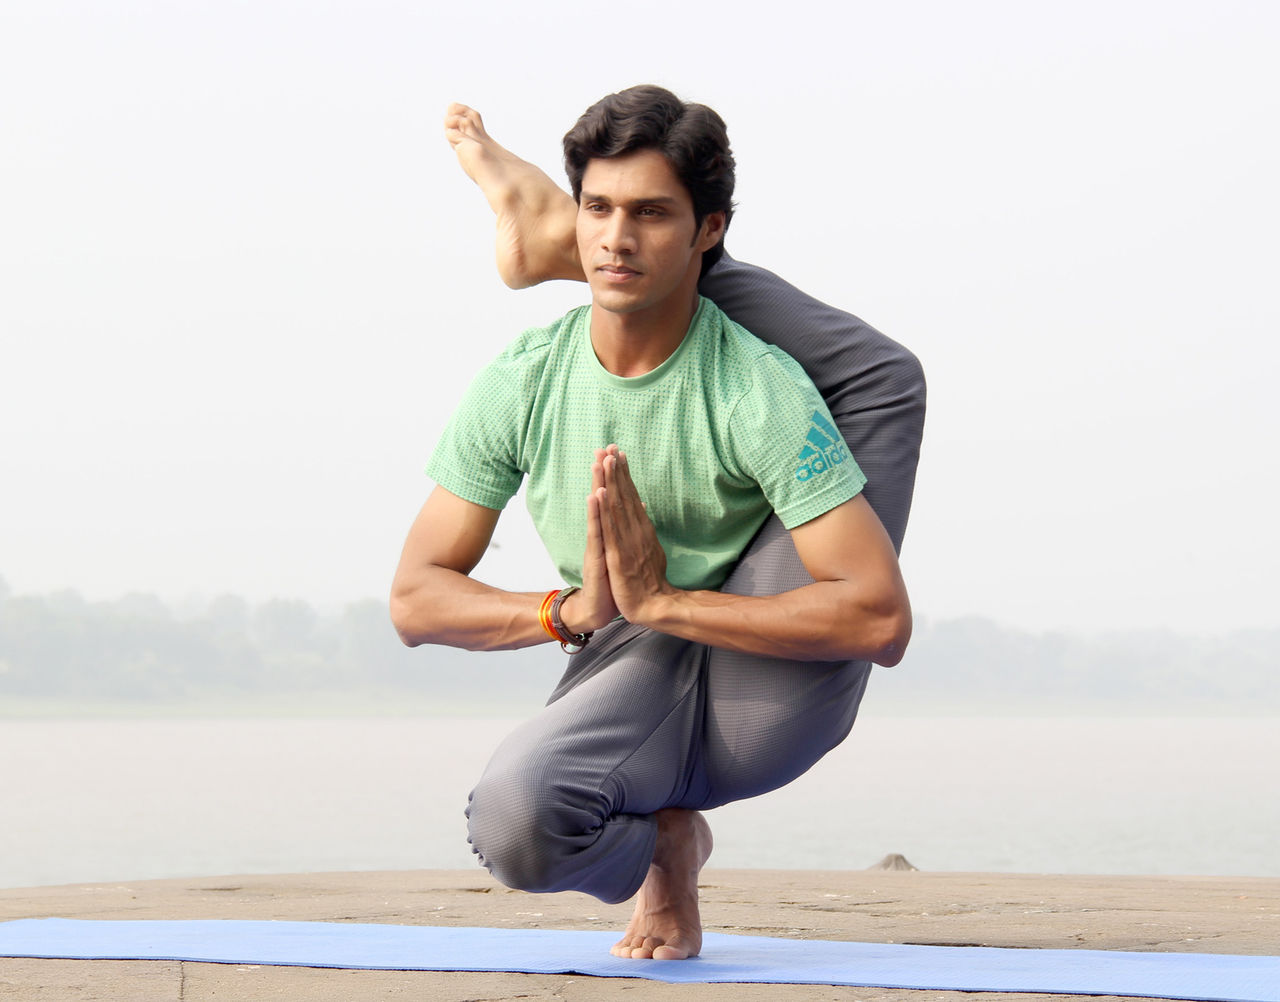 Indischer Yoga-Meister. Zum Glück gibt es auch leichtere Yoga-Übungen. (c) @yogi madhav/unsplash.com